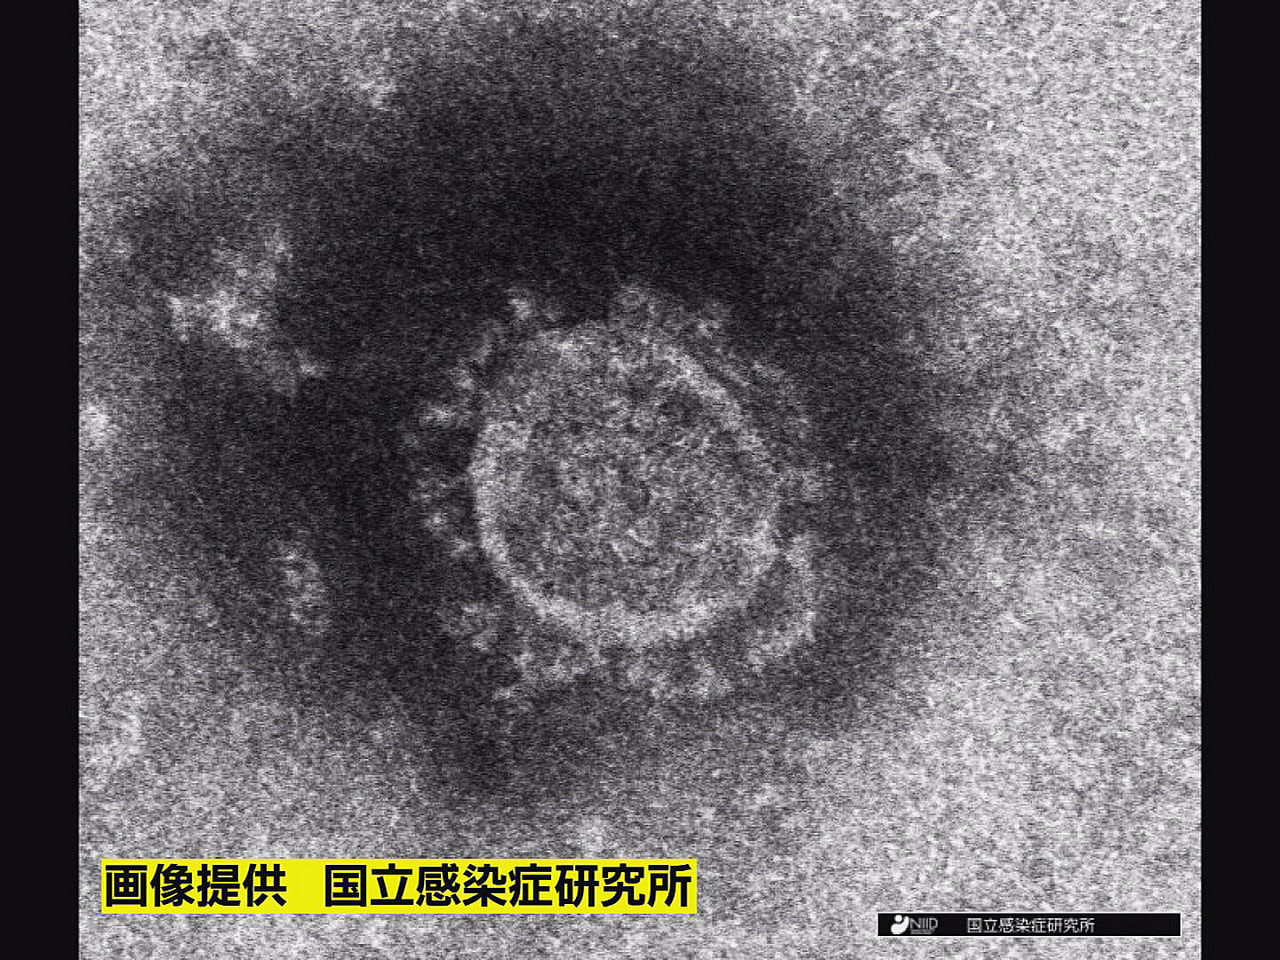 岐阜県は１日、新型コロナウイルスの新規感染者が４５３人確認されたと発表しました。...